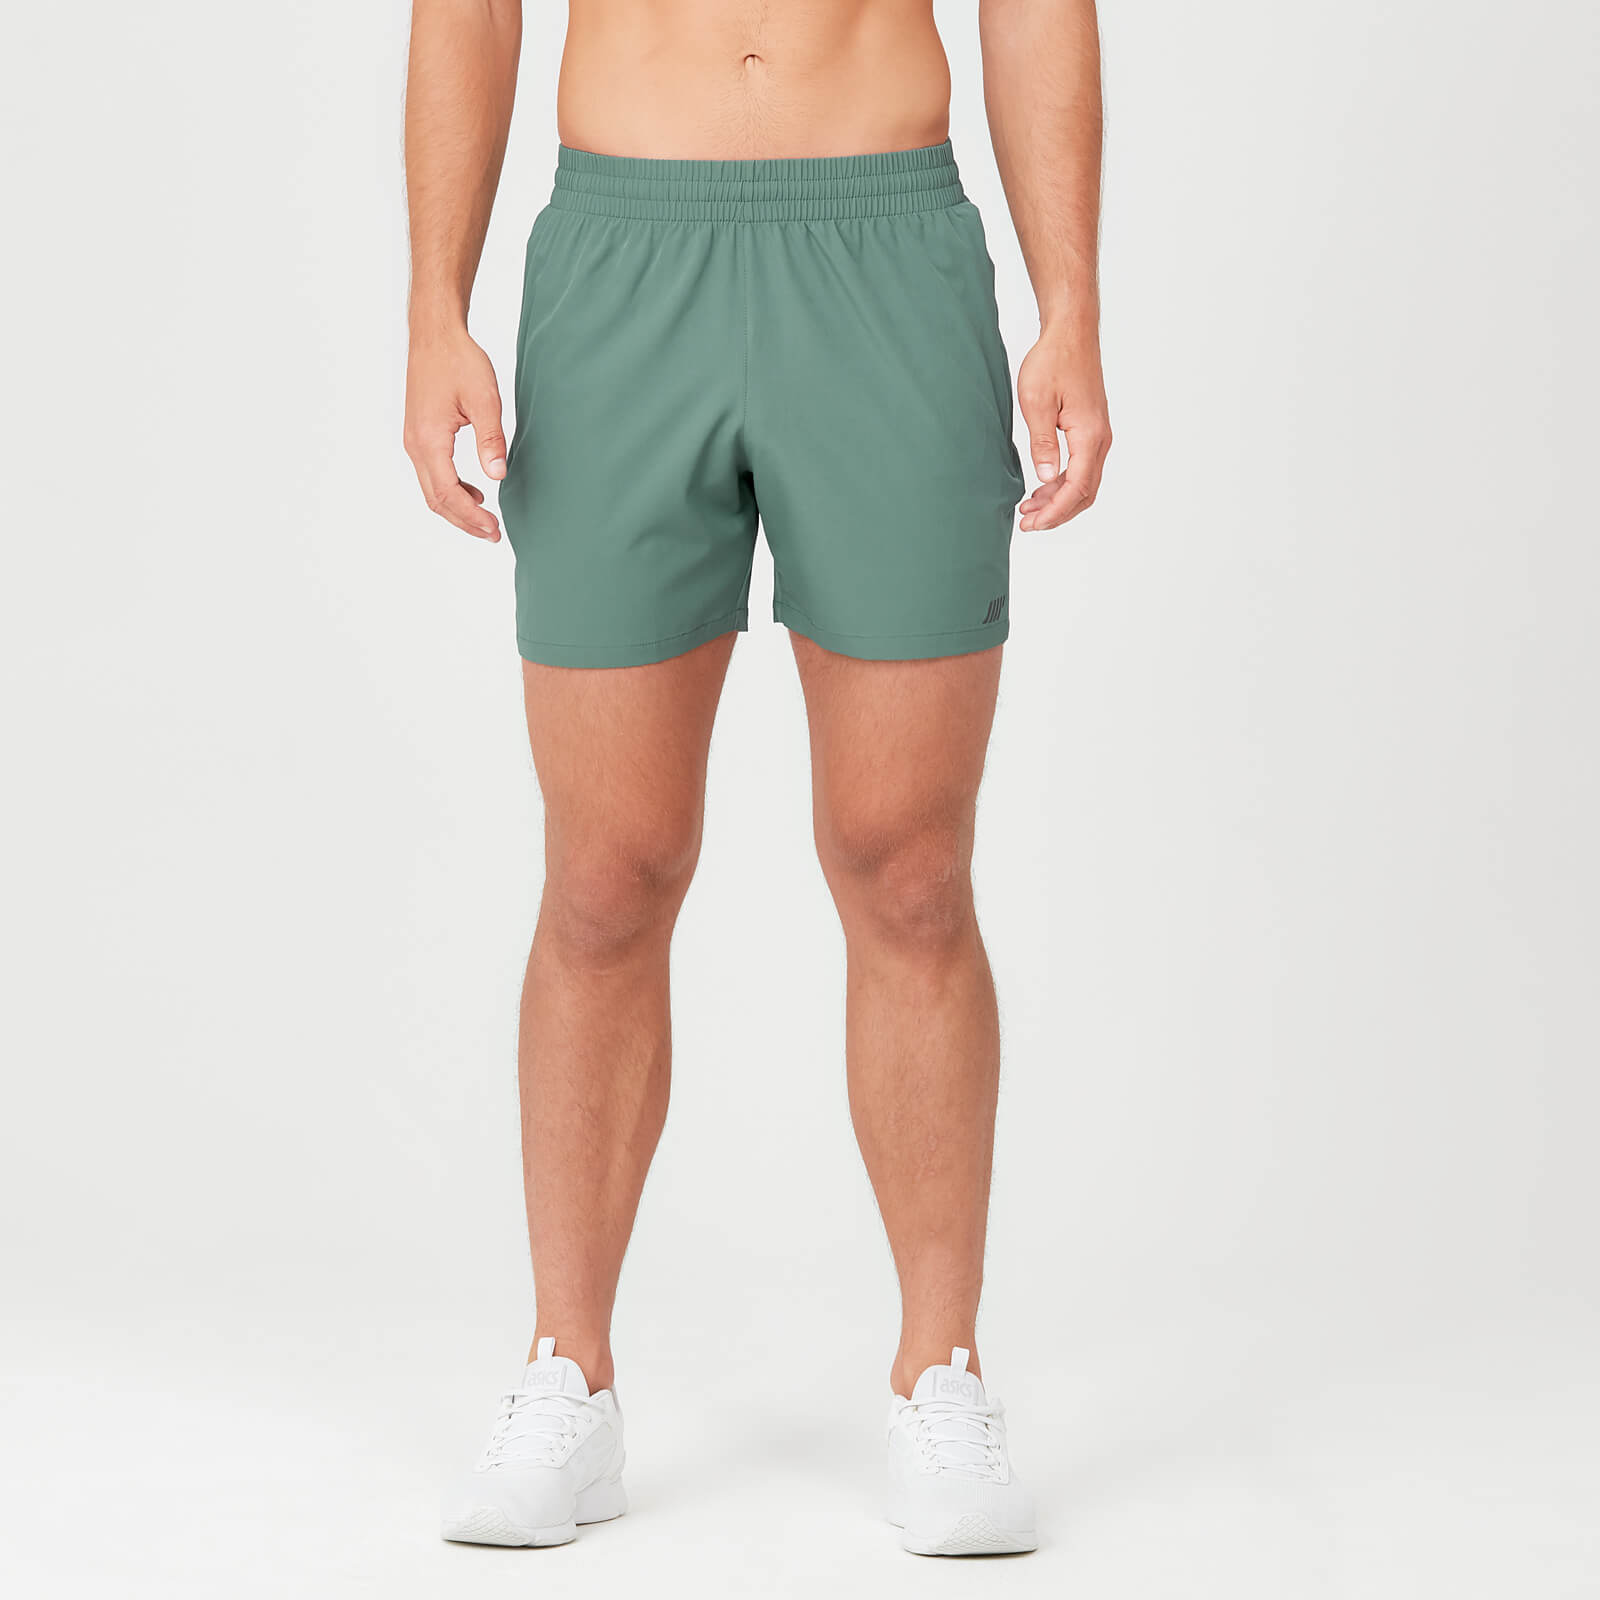 男士短跑短褲 - 綠色 - XS